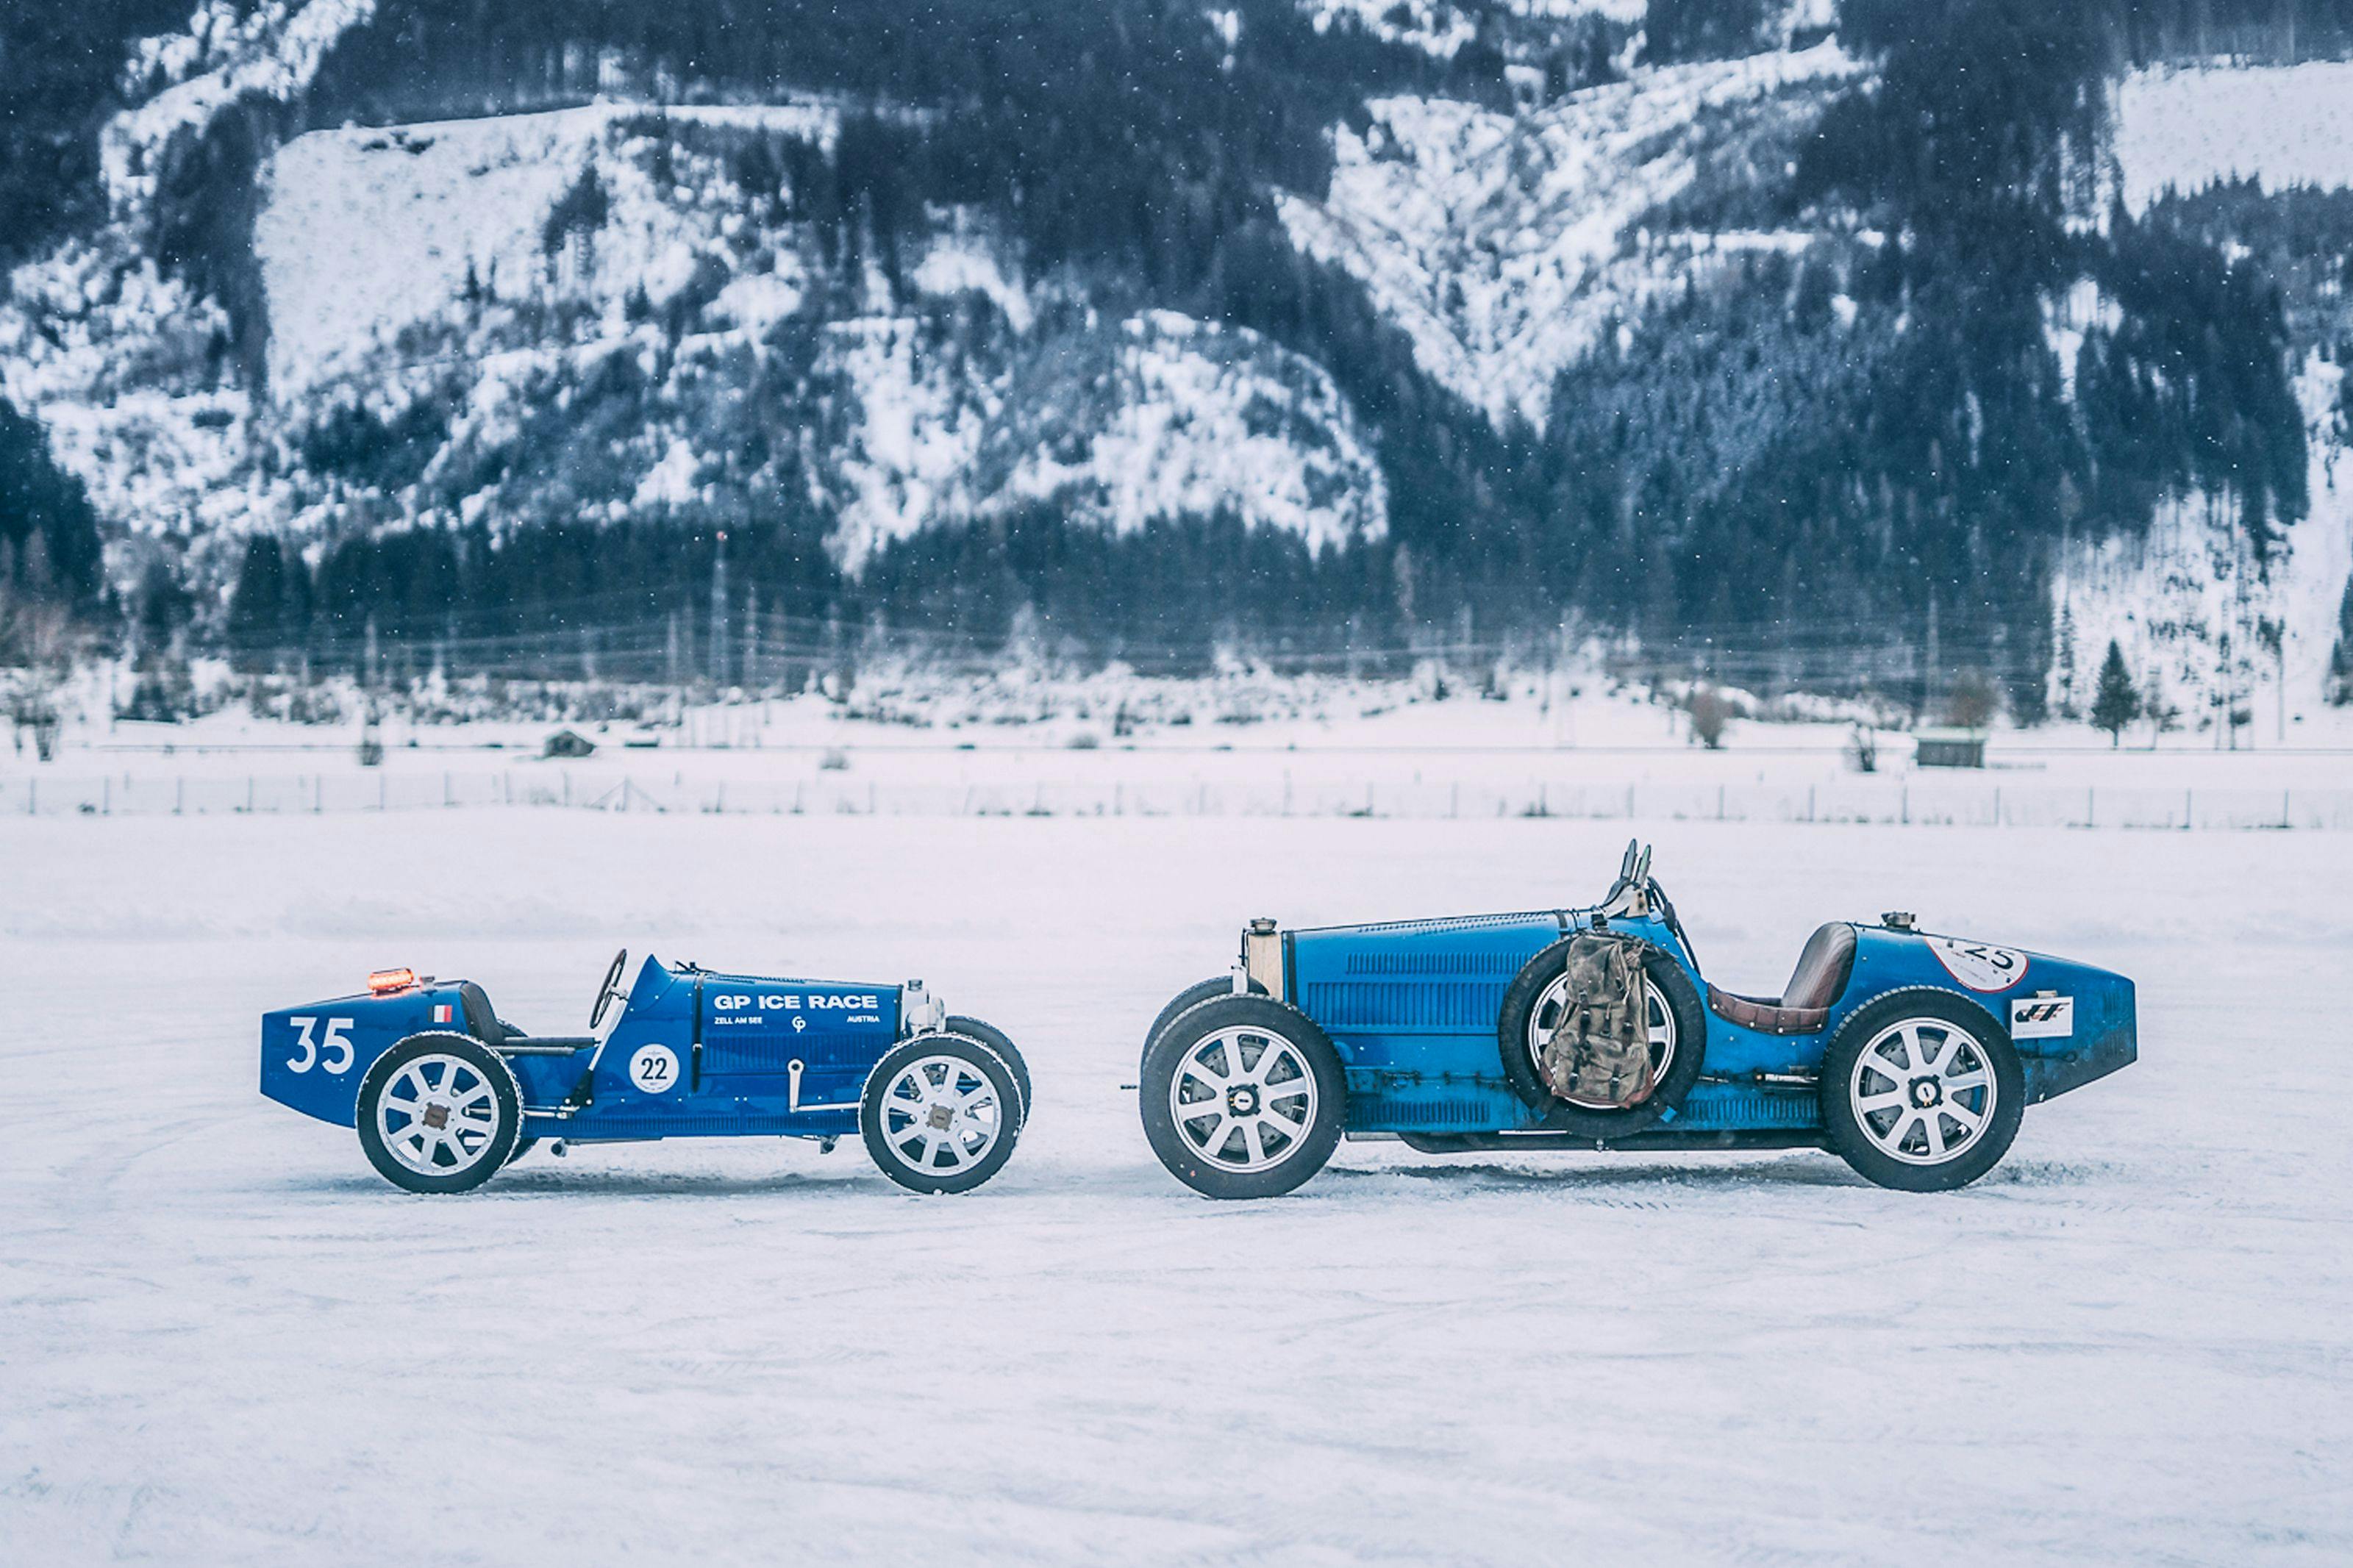 Bugatti kehrt über 60 Jahre nach seinem ersten Auftritt zurück zum GP Ice Race